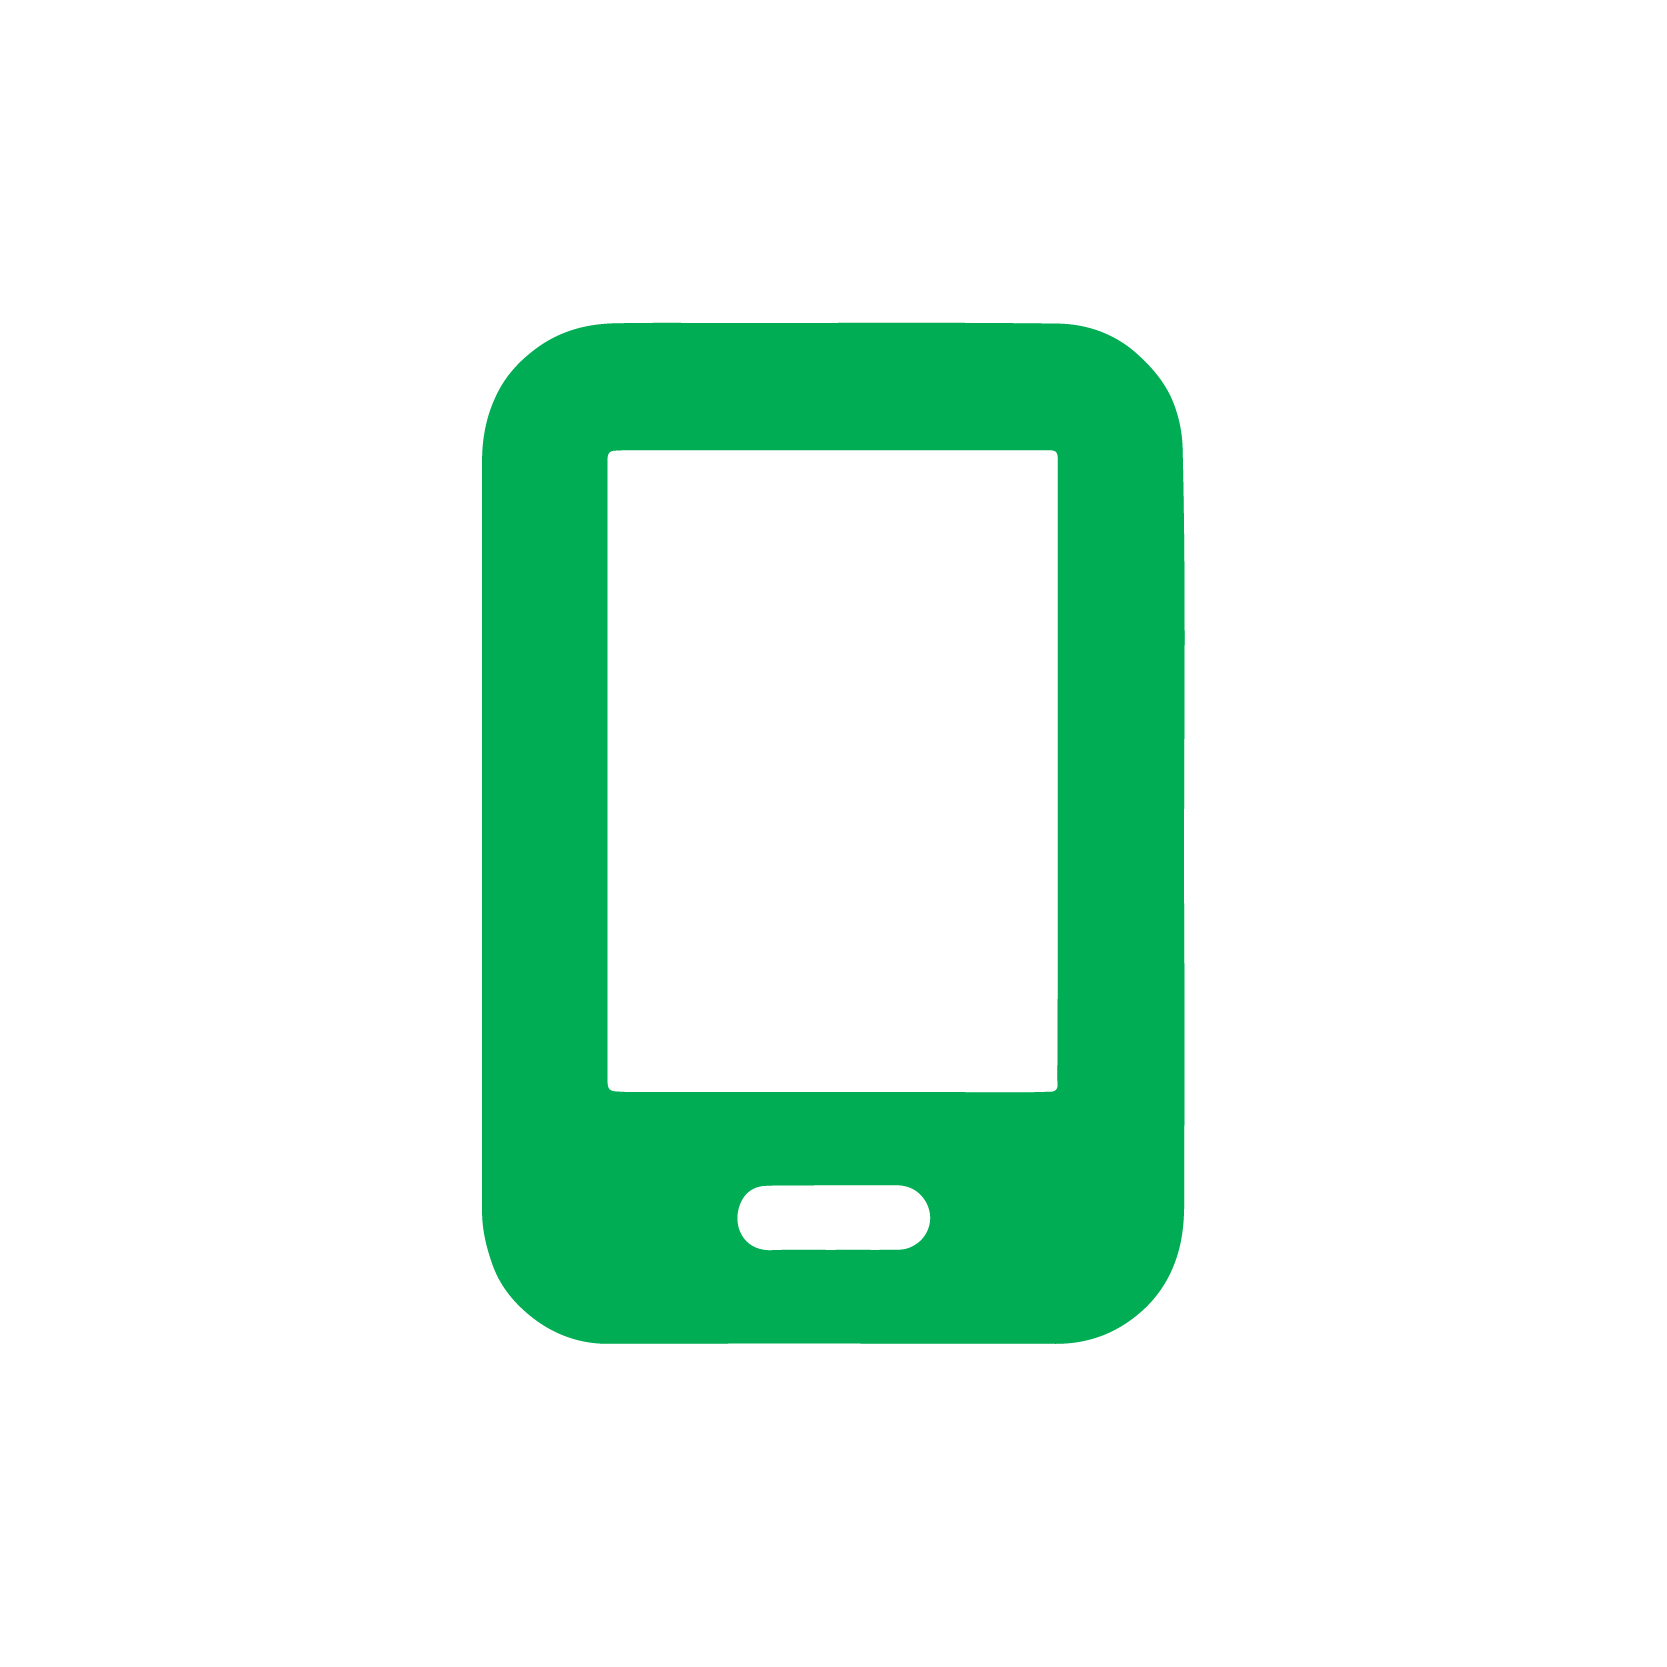 <strong>Per Schalter & App für unterwegs</strong> <br> Bedienen Sie Ihr Smart Home über einen Schalter und zusätzlich über eine App, die sich auch von unterwegs steuern lässt.